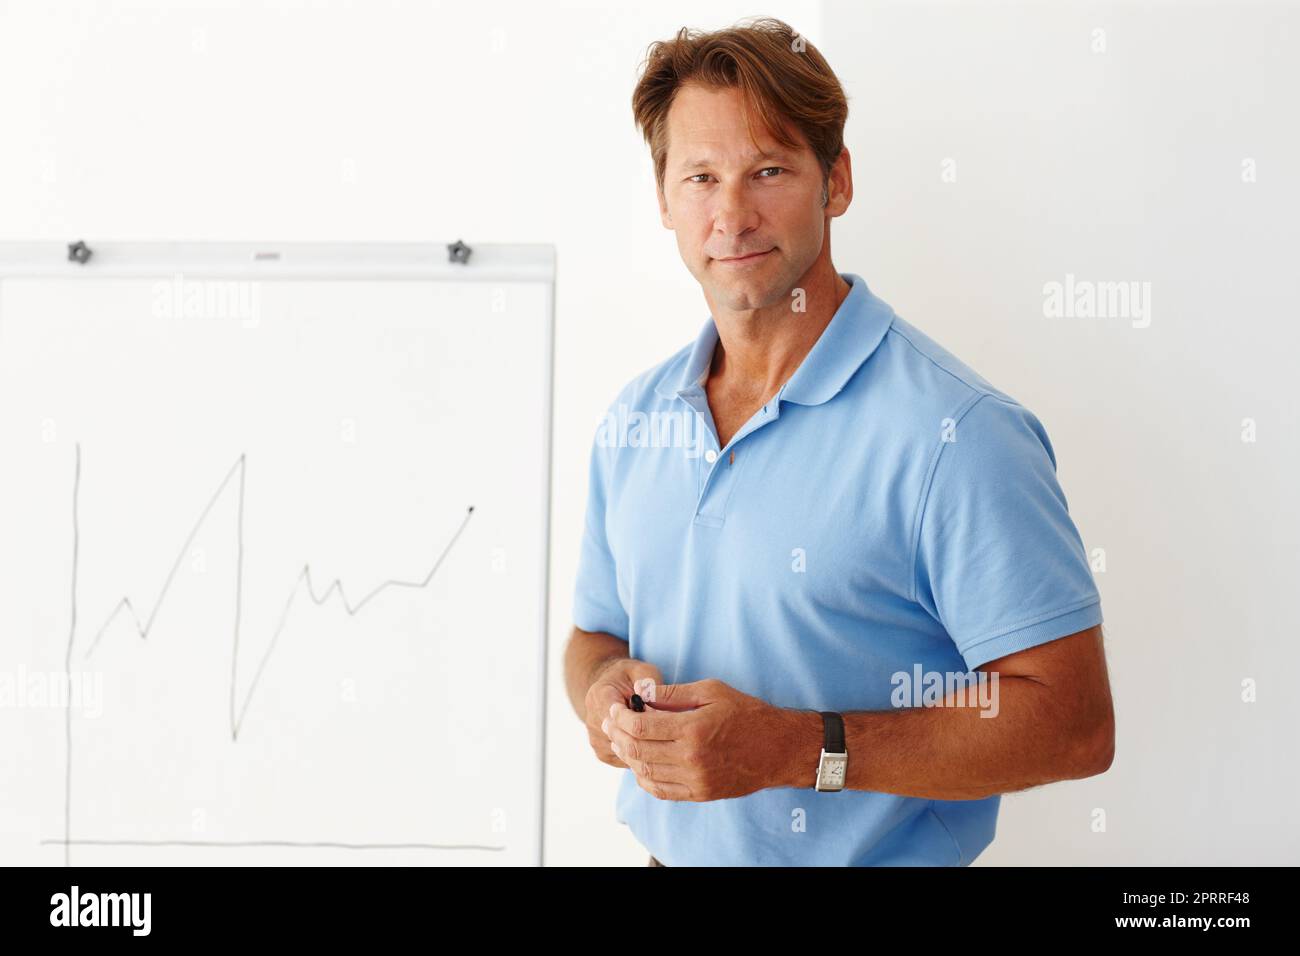 Permettez-moi de présenter mon nouveau plan. Photo moyenne d'un homme mûr debout à côté d'un tableau blanc. Banque D'Images